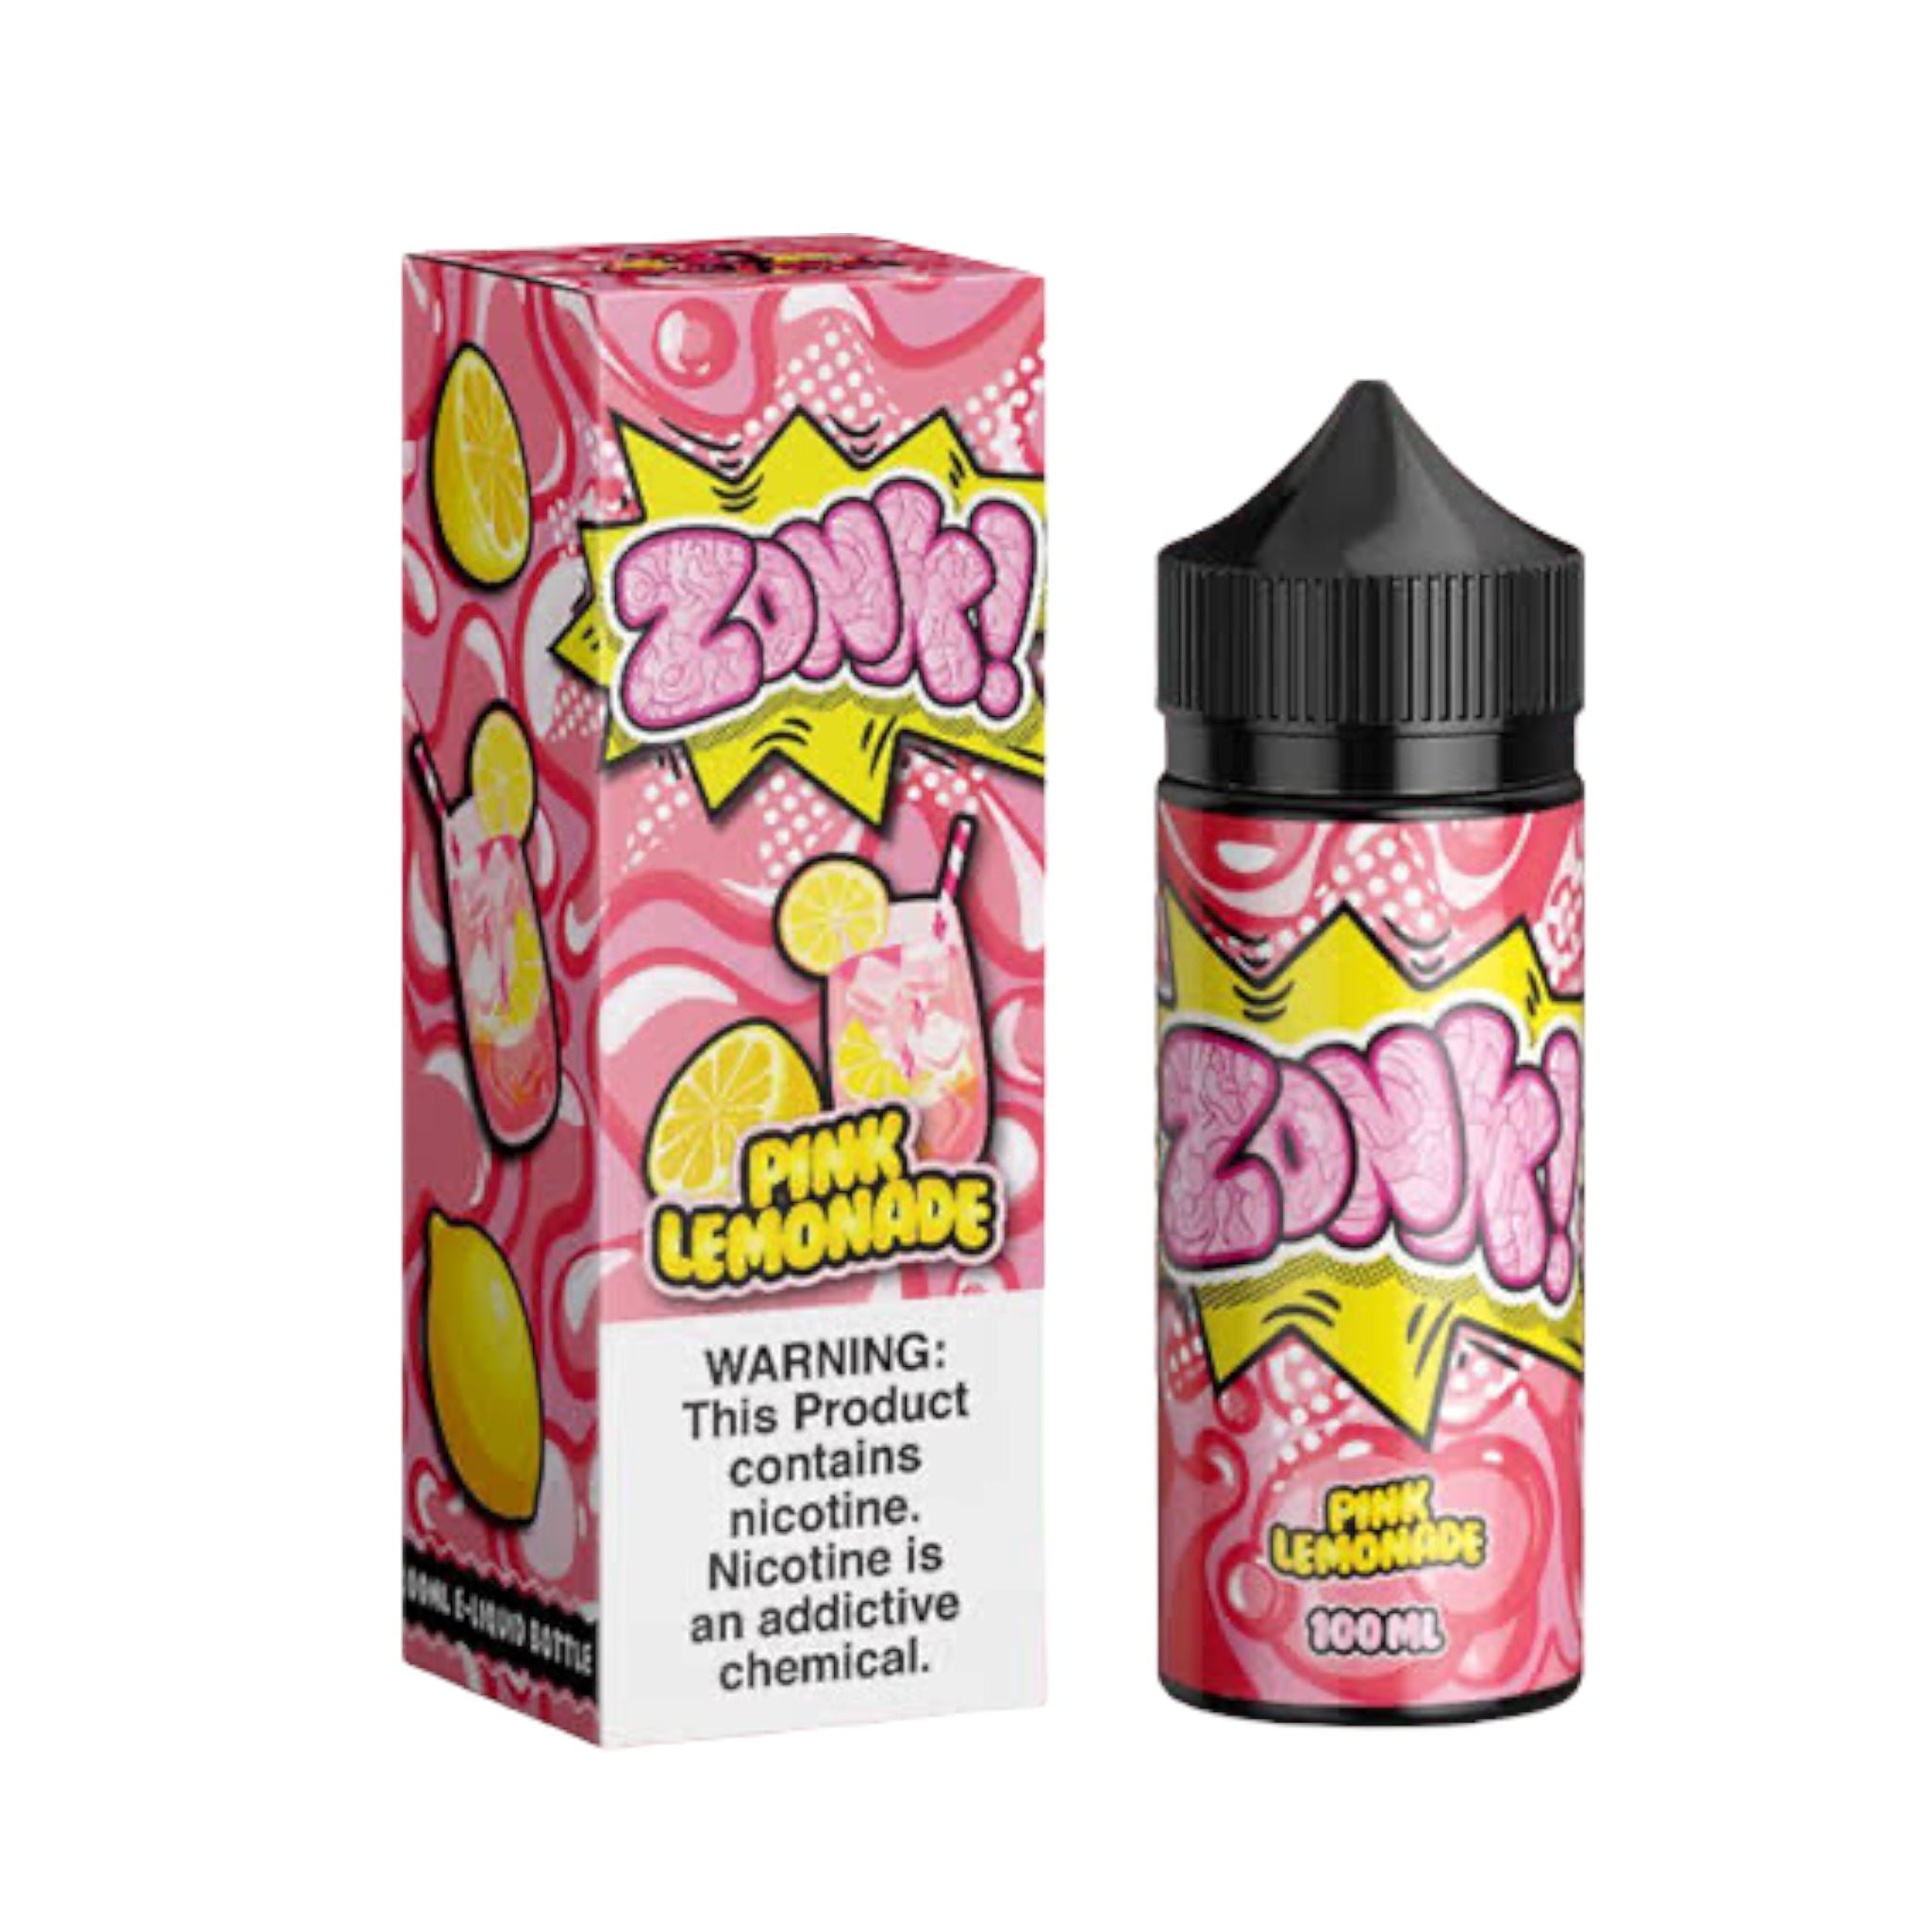 ZoNk! Pink Lemonade by Juice Man 100mL Series